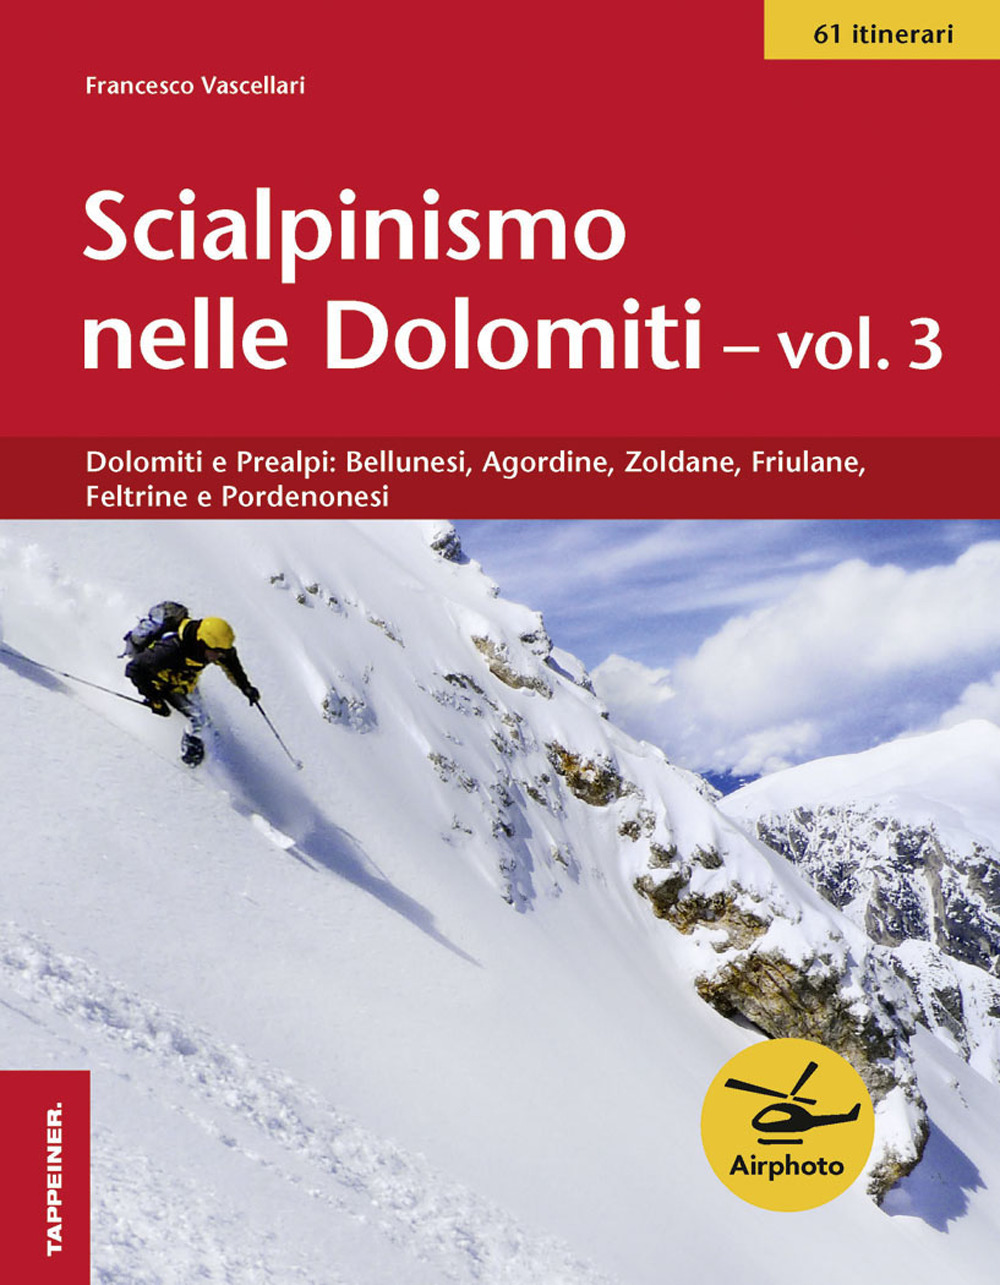 Scialpinismo nelle Dolomiti. Vol. 3: Dolomiti e prealpi: bellunesi, agordine, zoldane, friulane, feltrine e pordenonesi